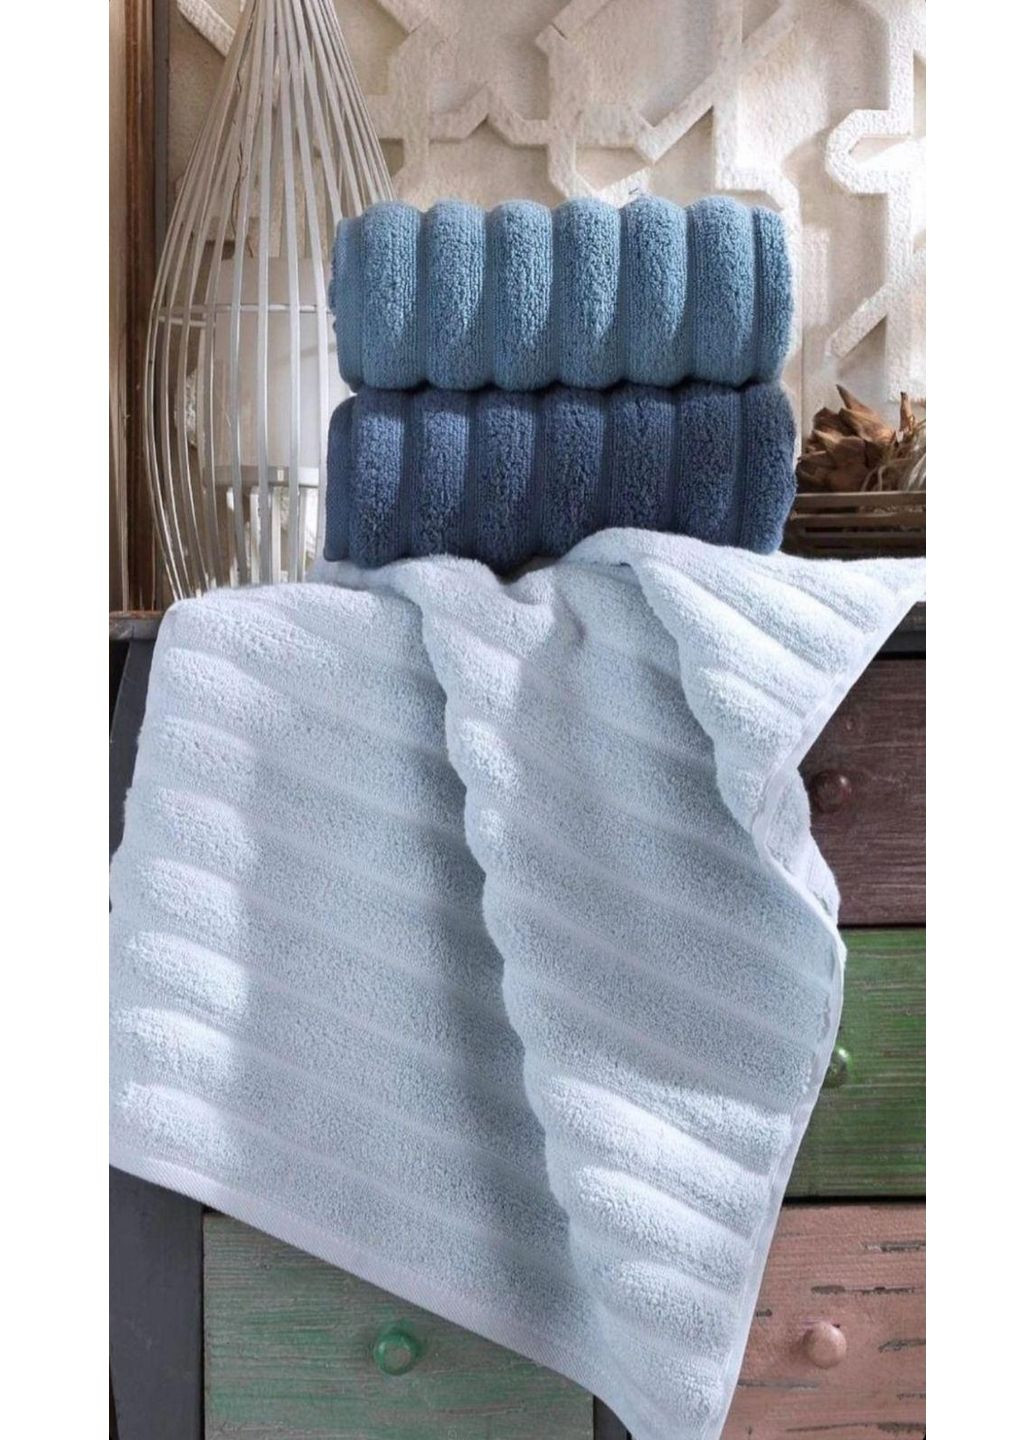 Cestepe комплект хлопковых полотенец для ванной (3 штуки) комбинированный производство - Турция